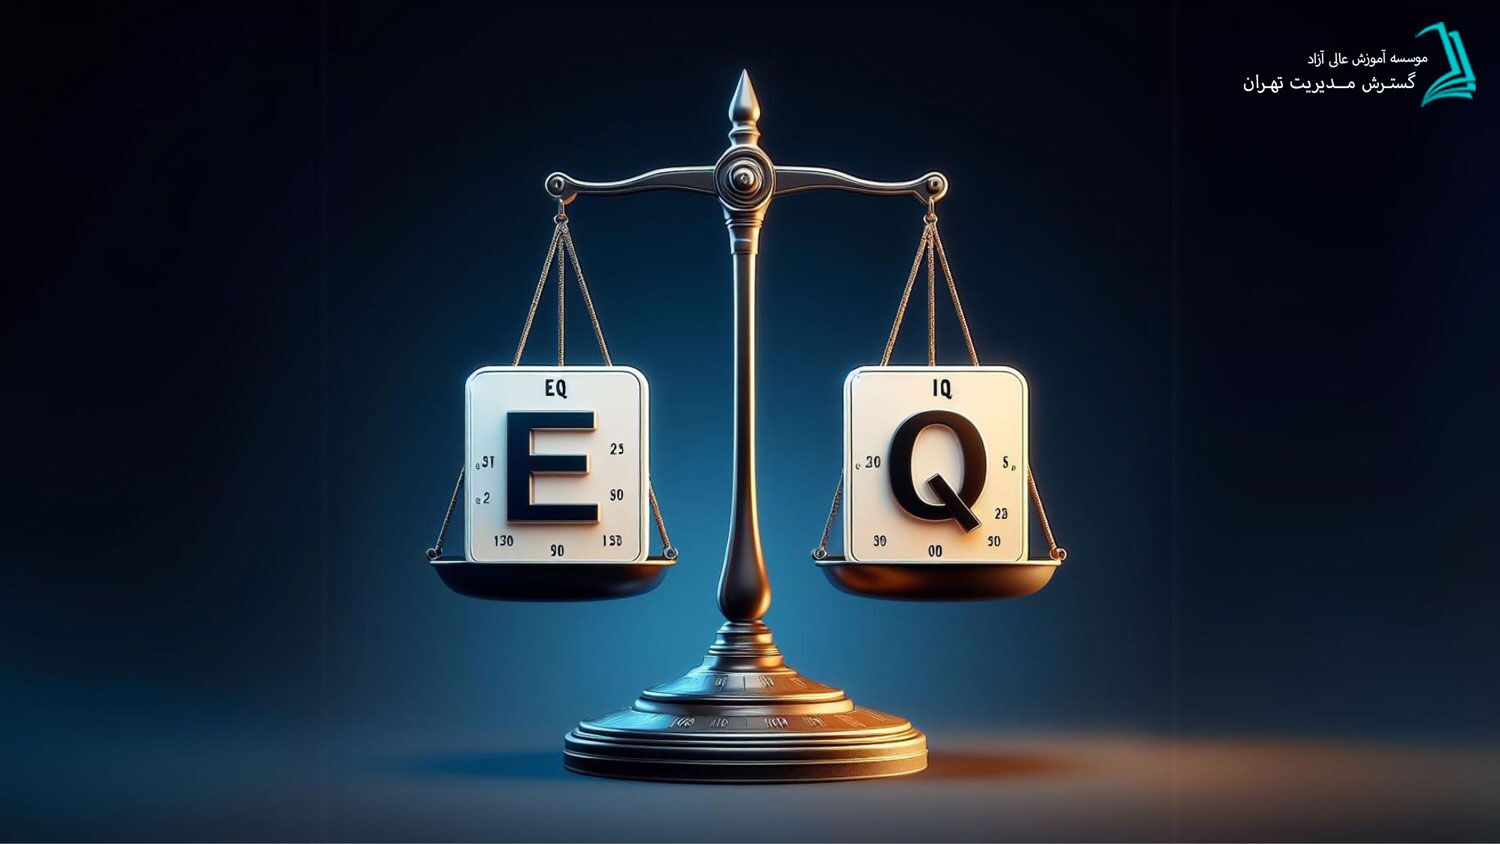 هوش هیجانی EQ در مقابل هوش شناختی IQ